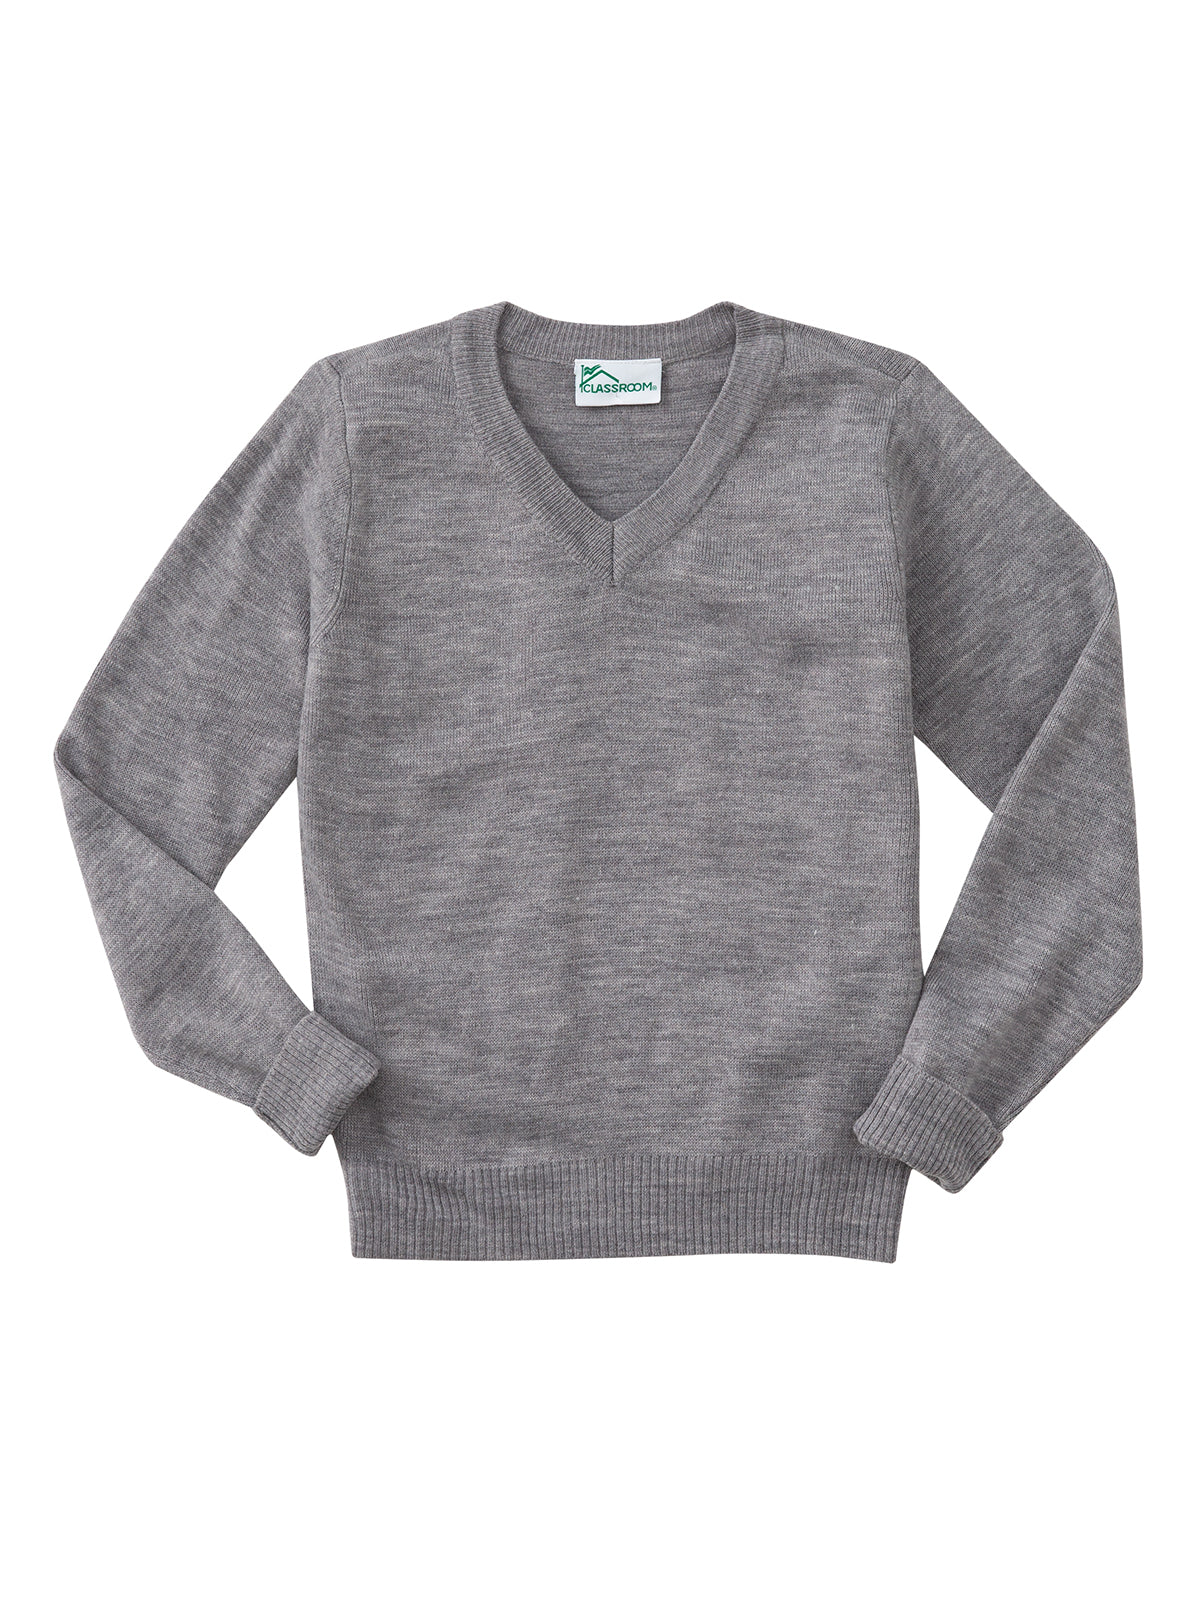 Youth Unisex Long Sleeve V-neck Sweater - 56702 - Heather Gray